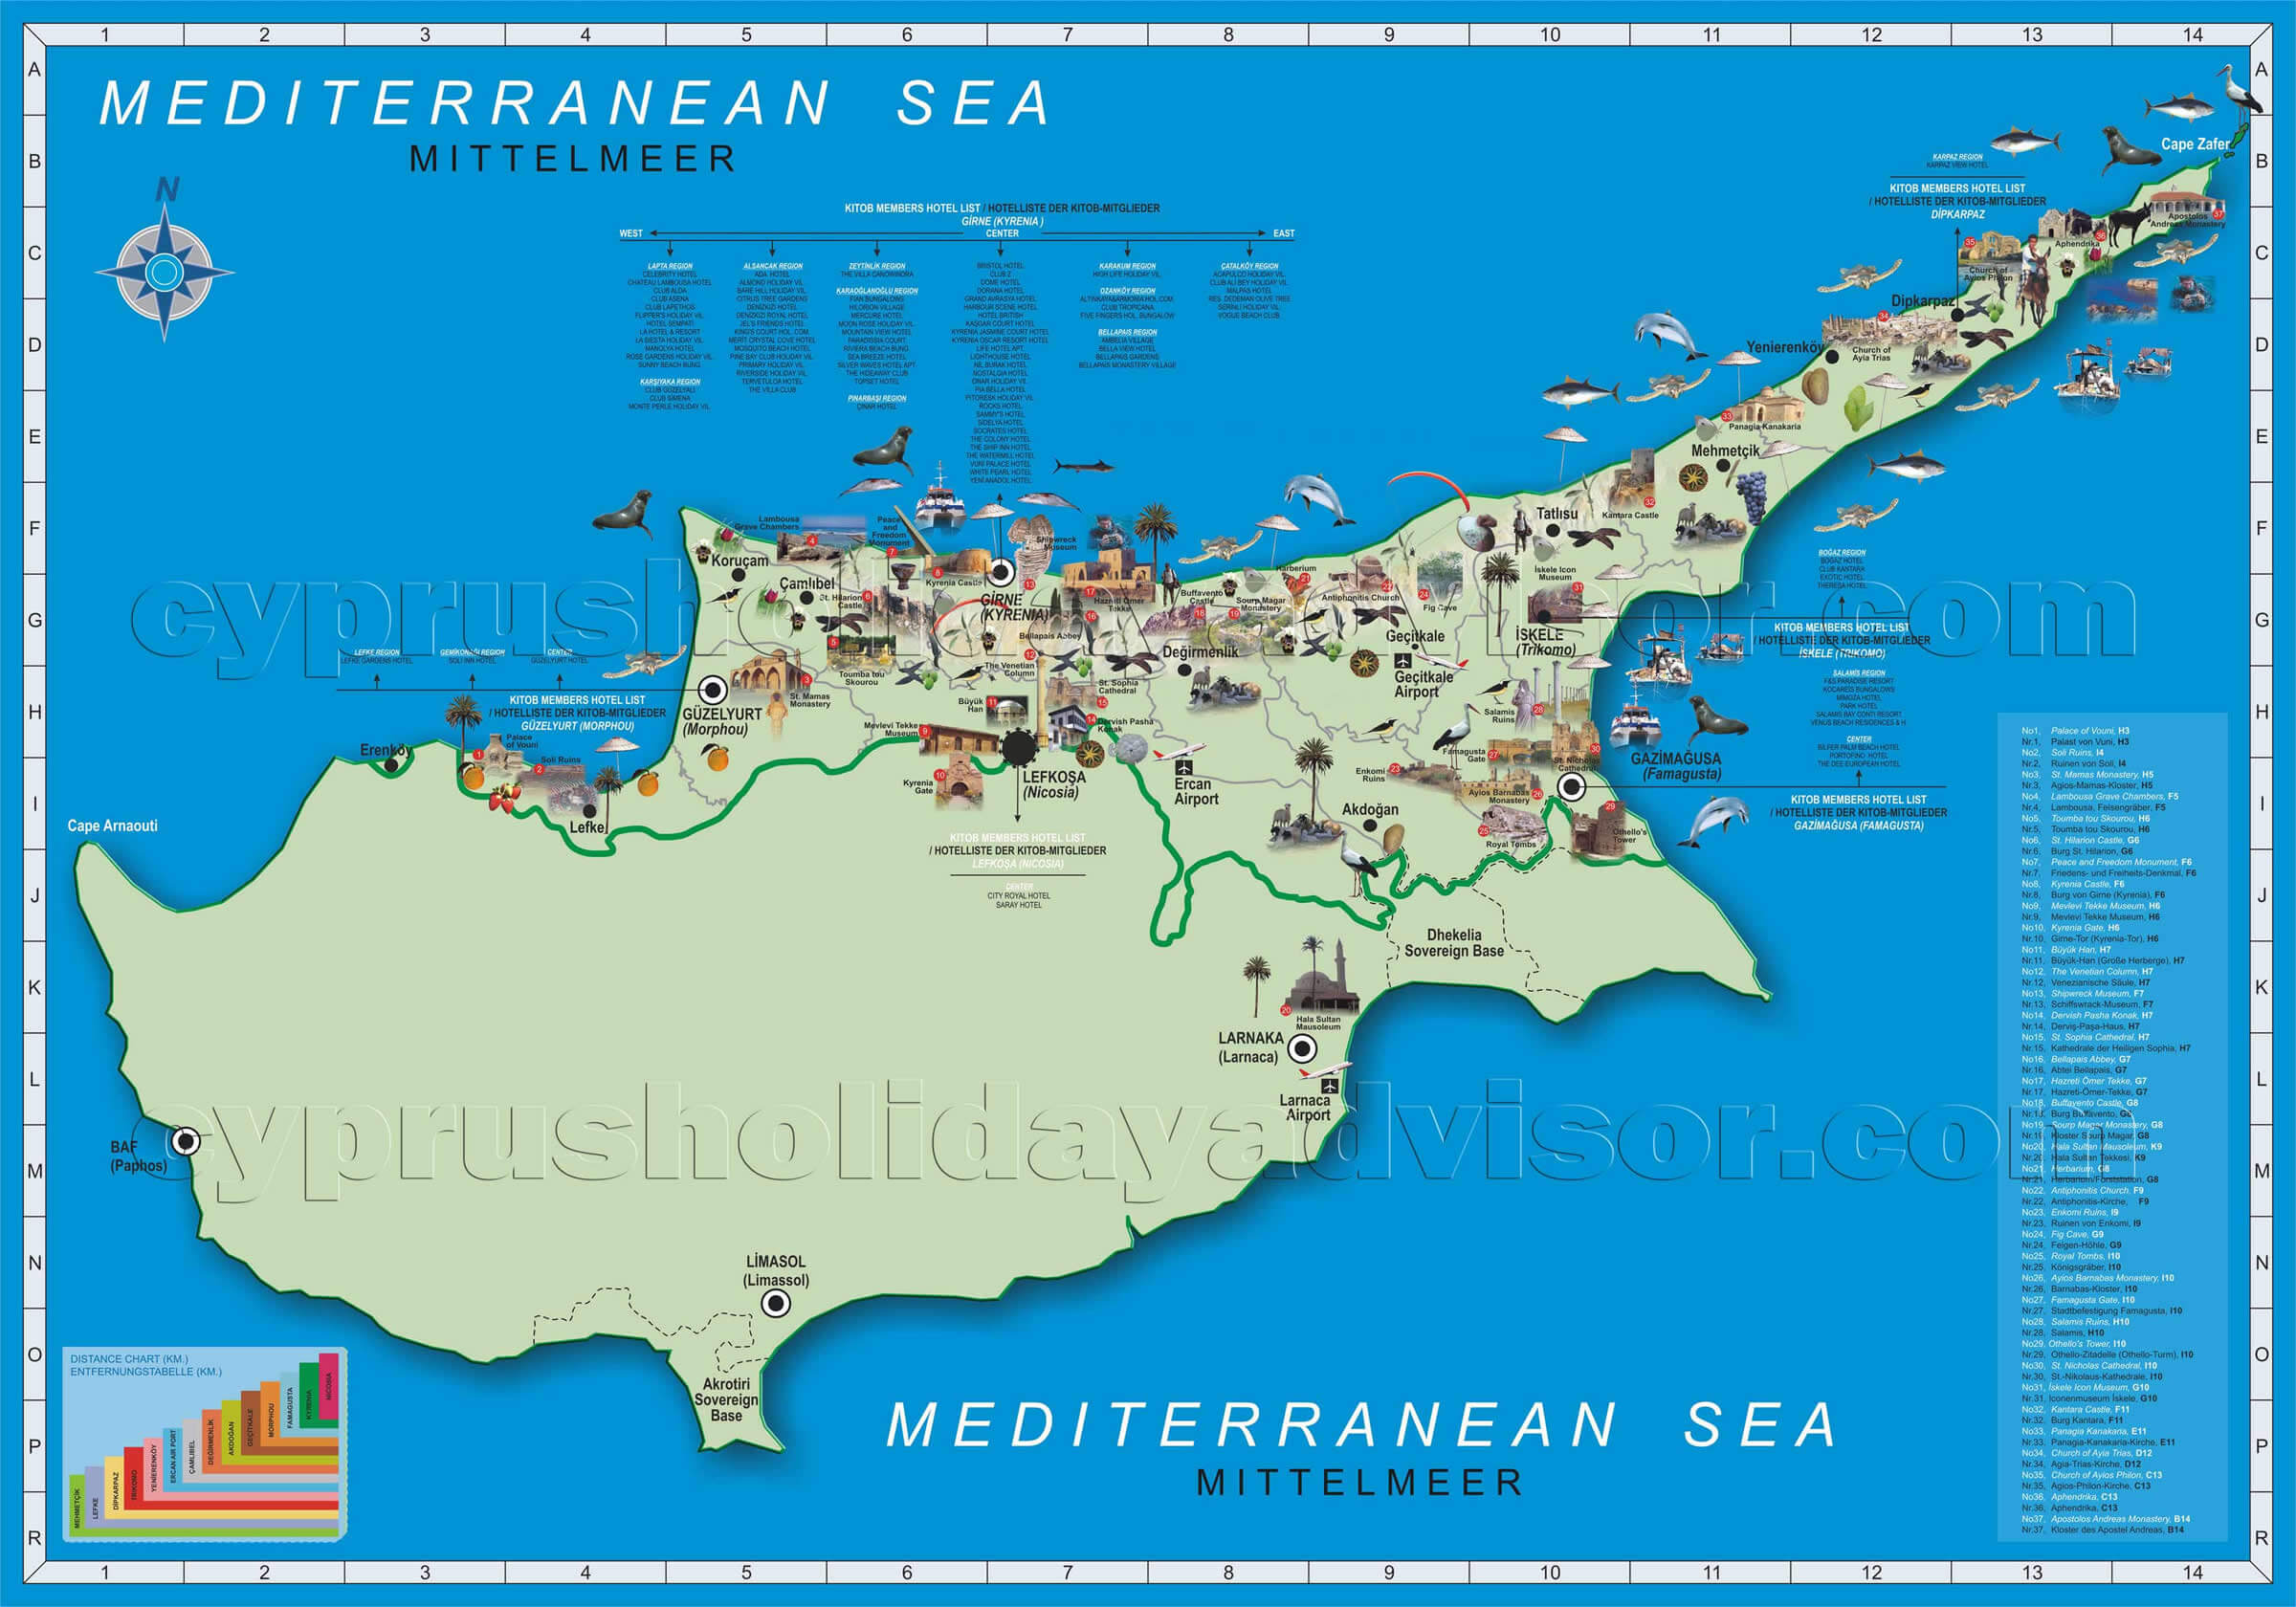 northern cyprus tourist information